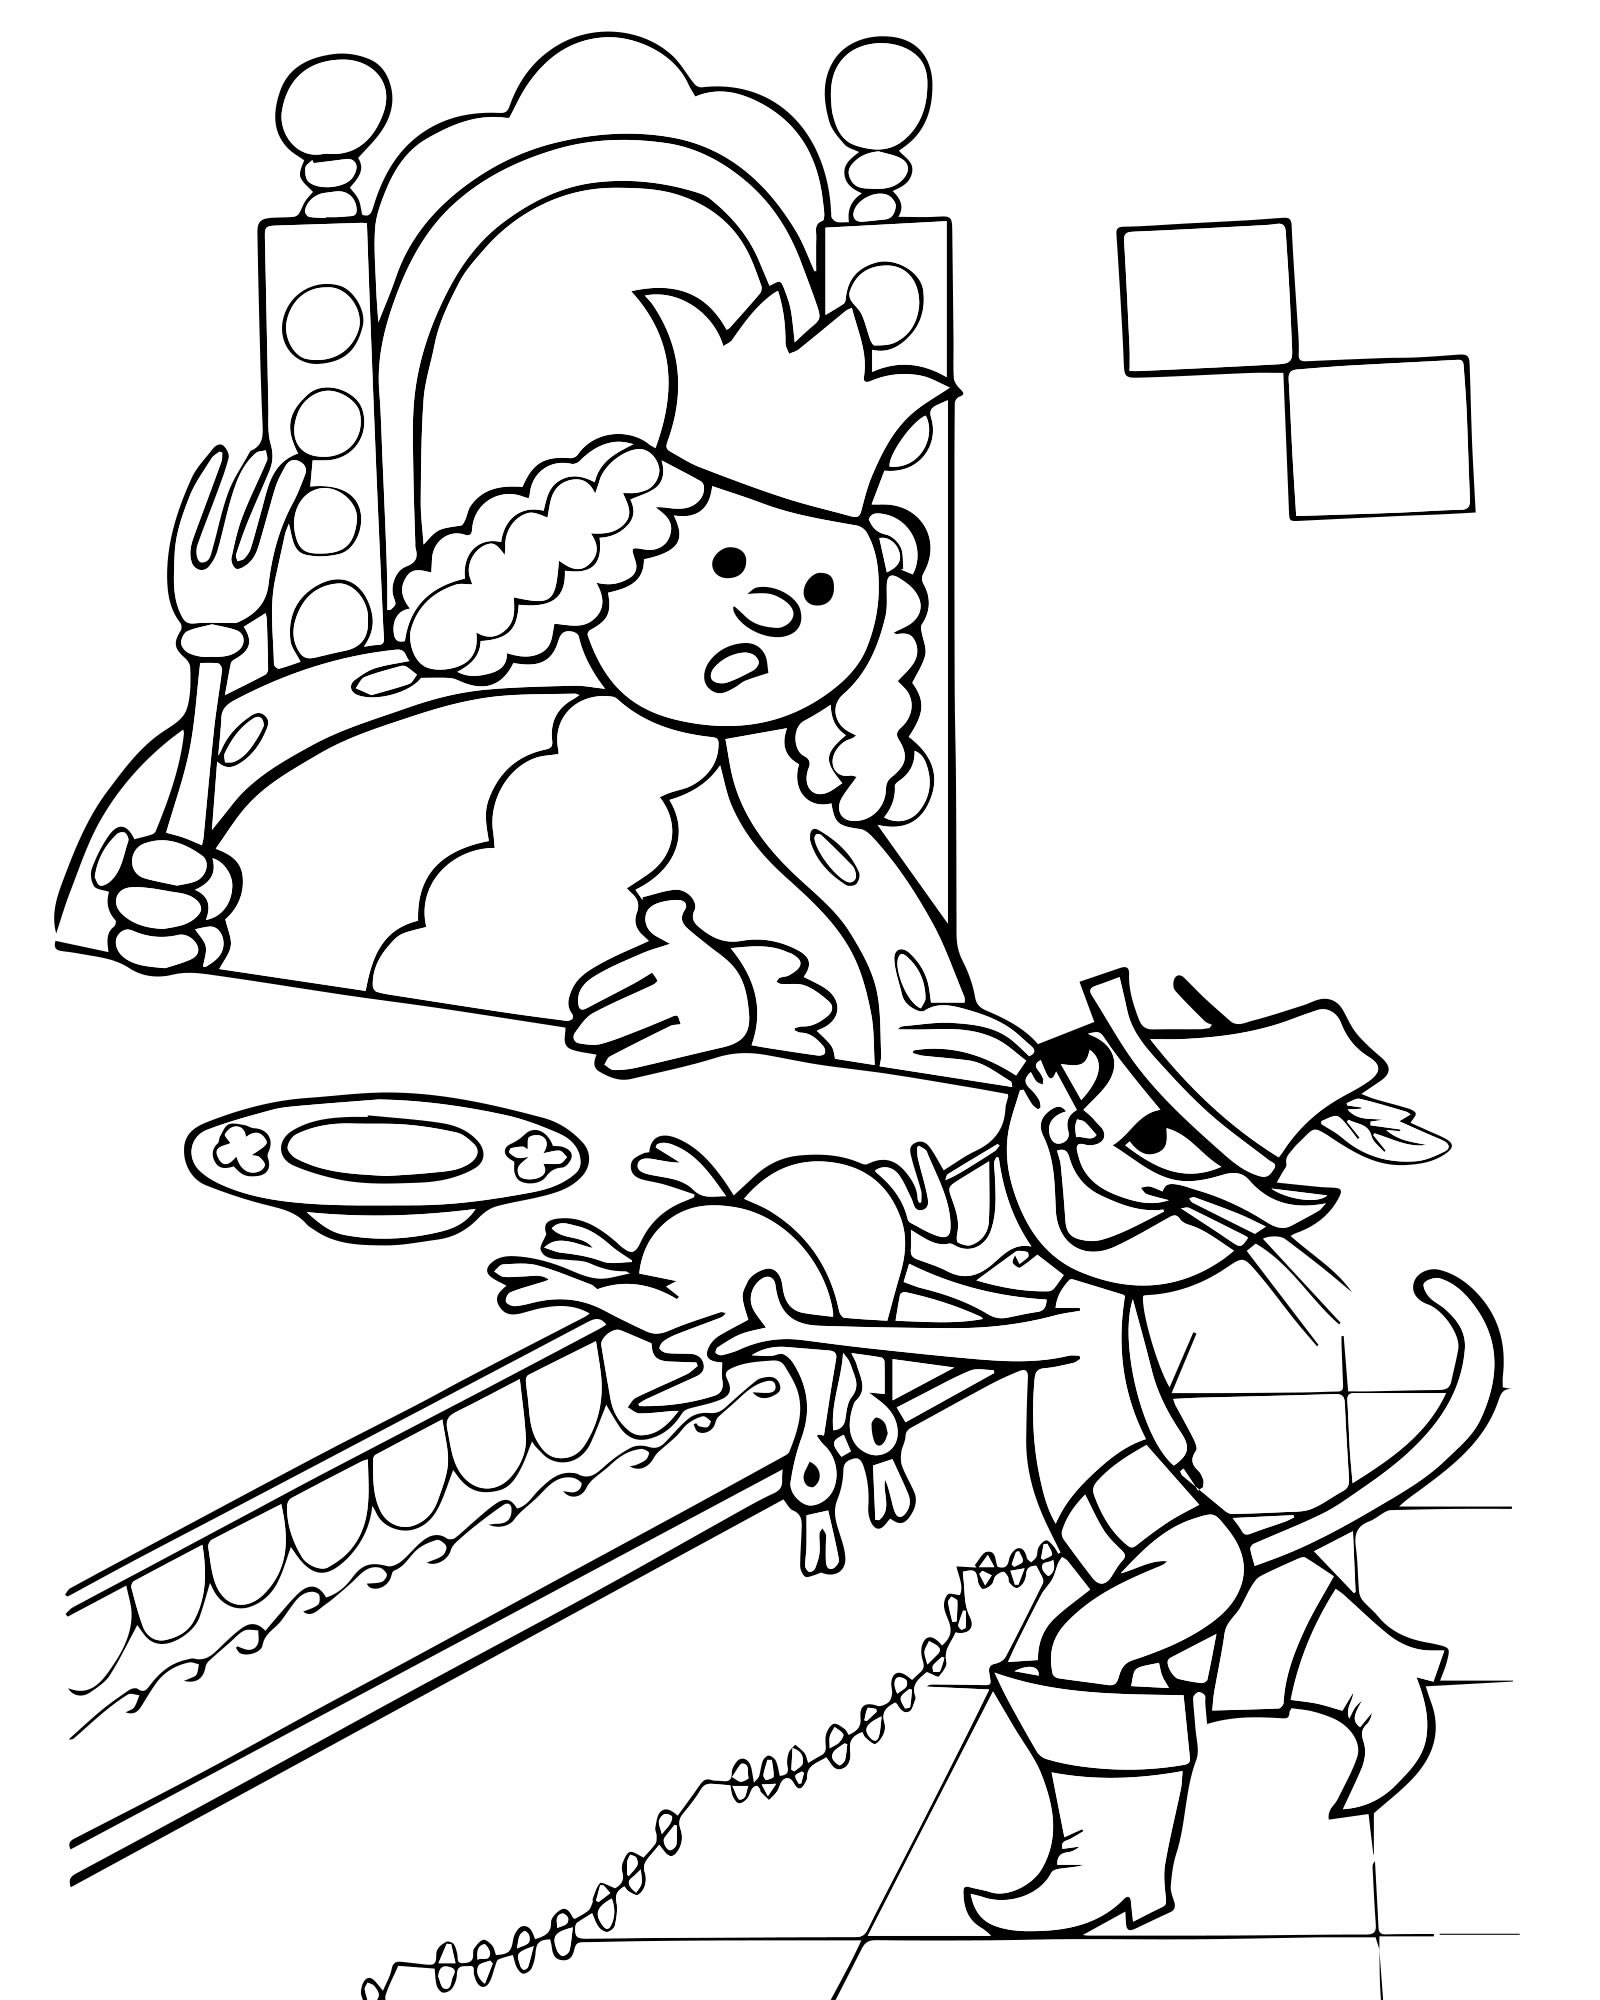 Кот в сапогах и король раскраска для детей